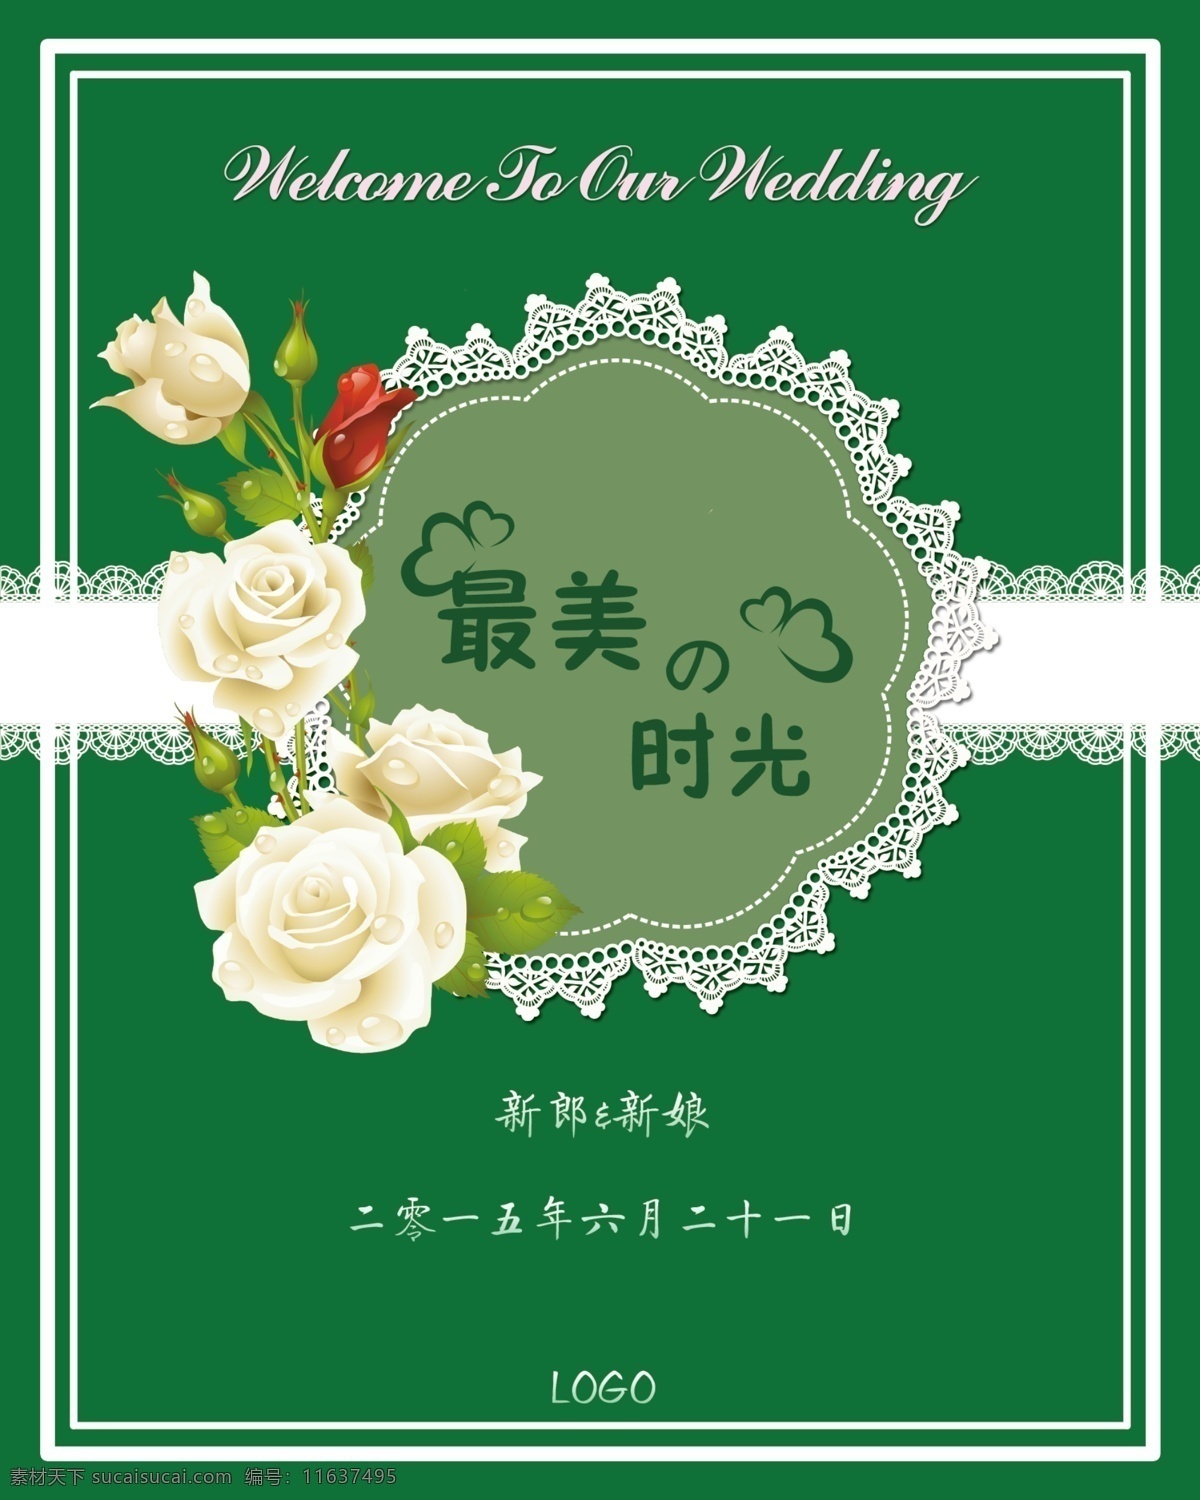 森系婚礼水牌 绿色婚礼水牌 婚礼水牌 水牌设计 婚礼水牌设计 婚礼设计图 婚礼logo 分层